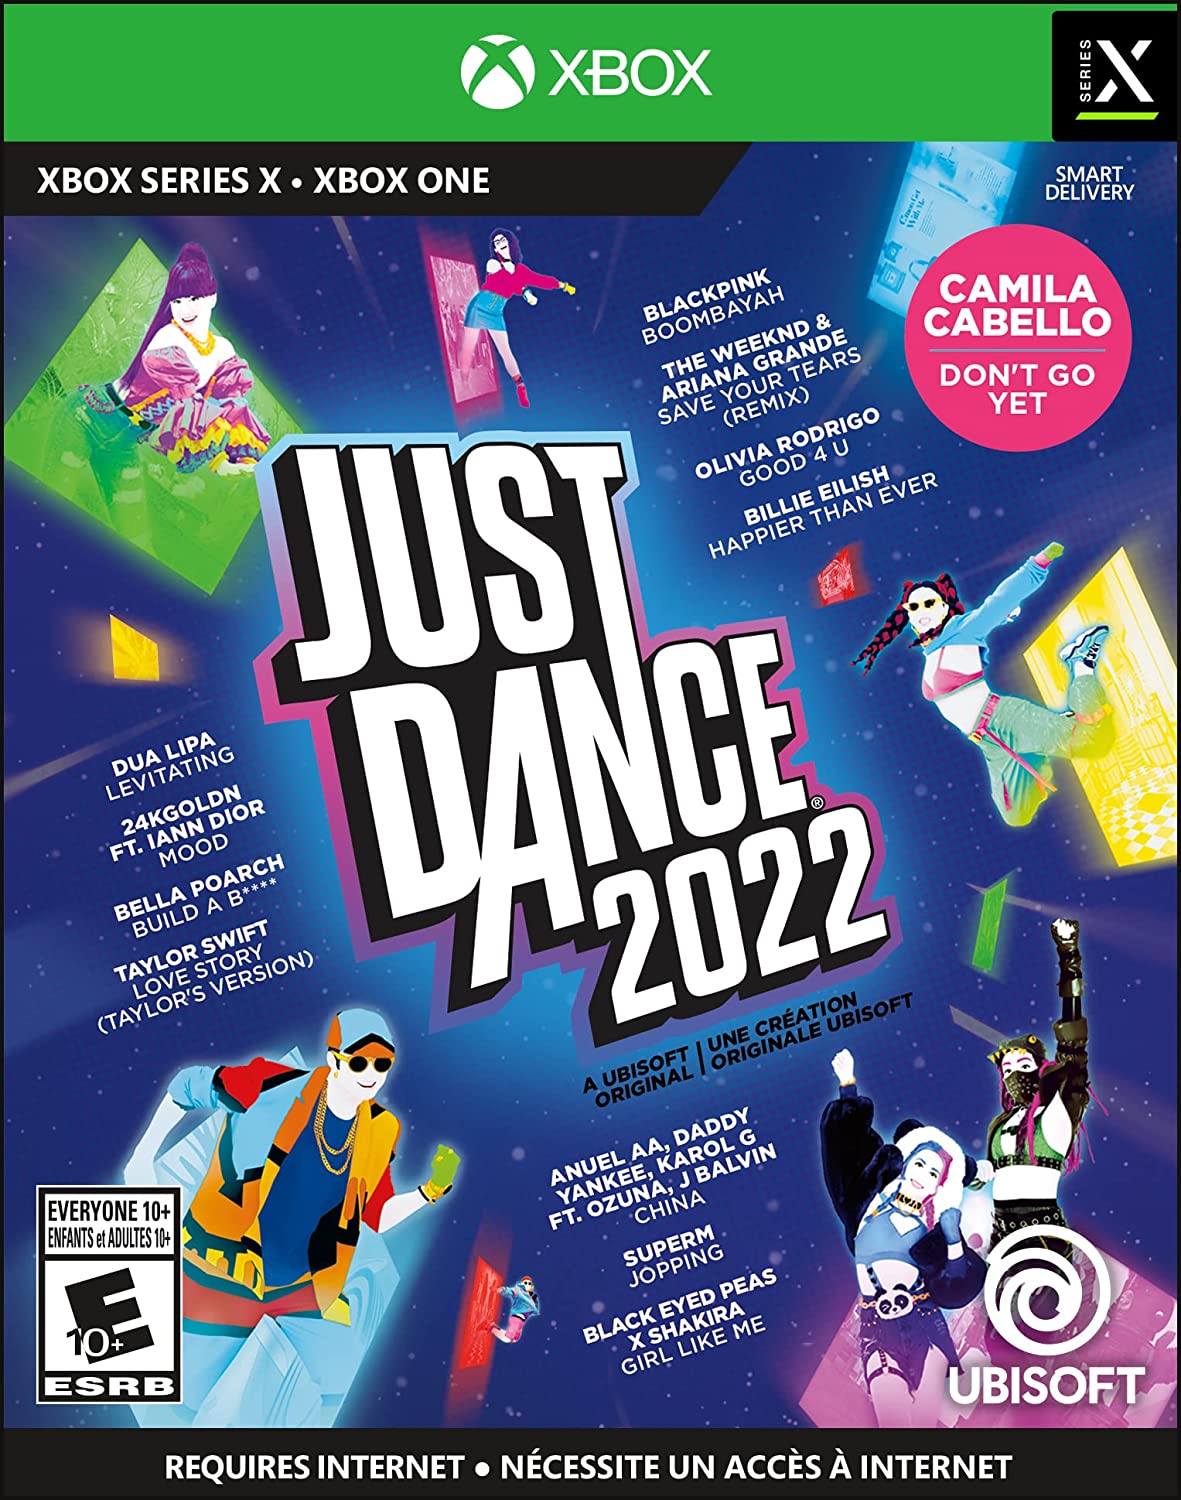 Just Dance 2023 Edition – Coreografias alternativas para Lady Gaga, K/DA e  Dua Lipa são reveladas; Música de Olivia Rodrigo é anunciada